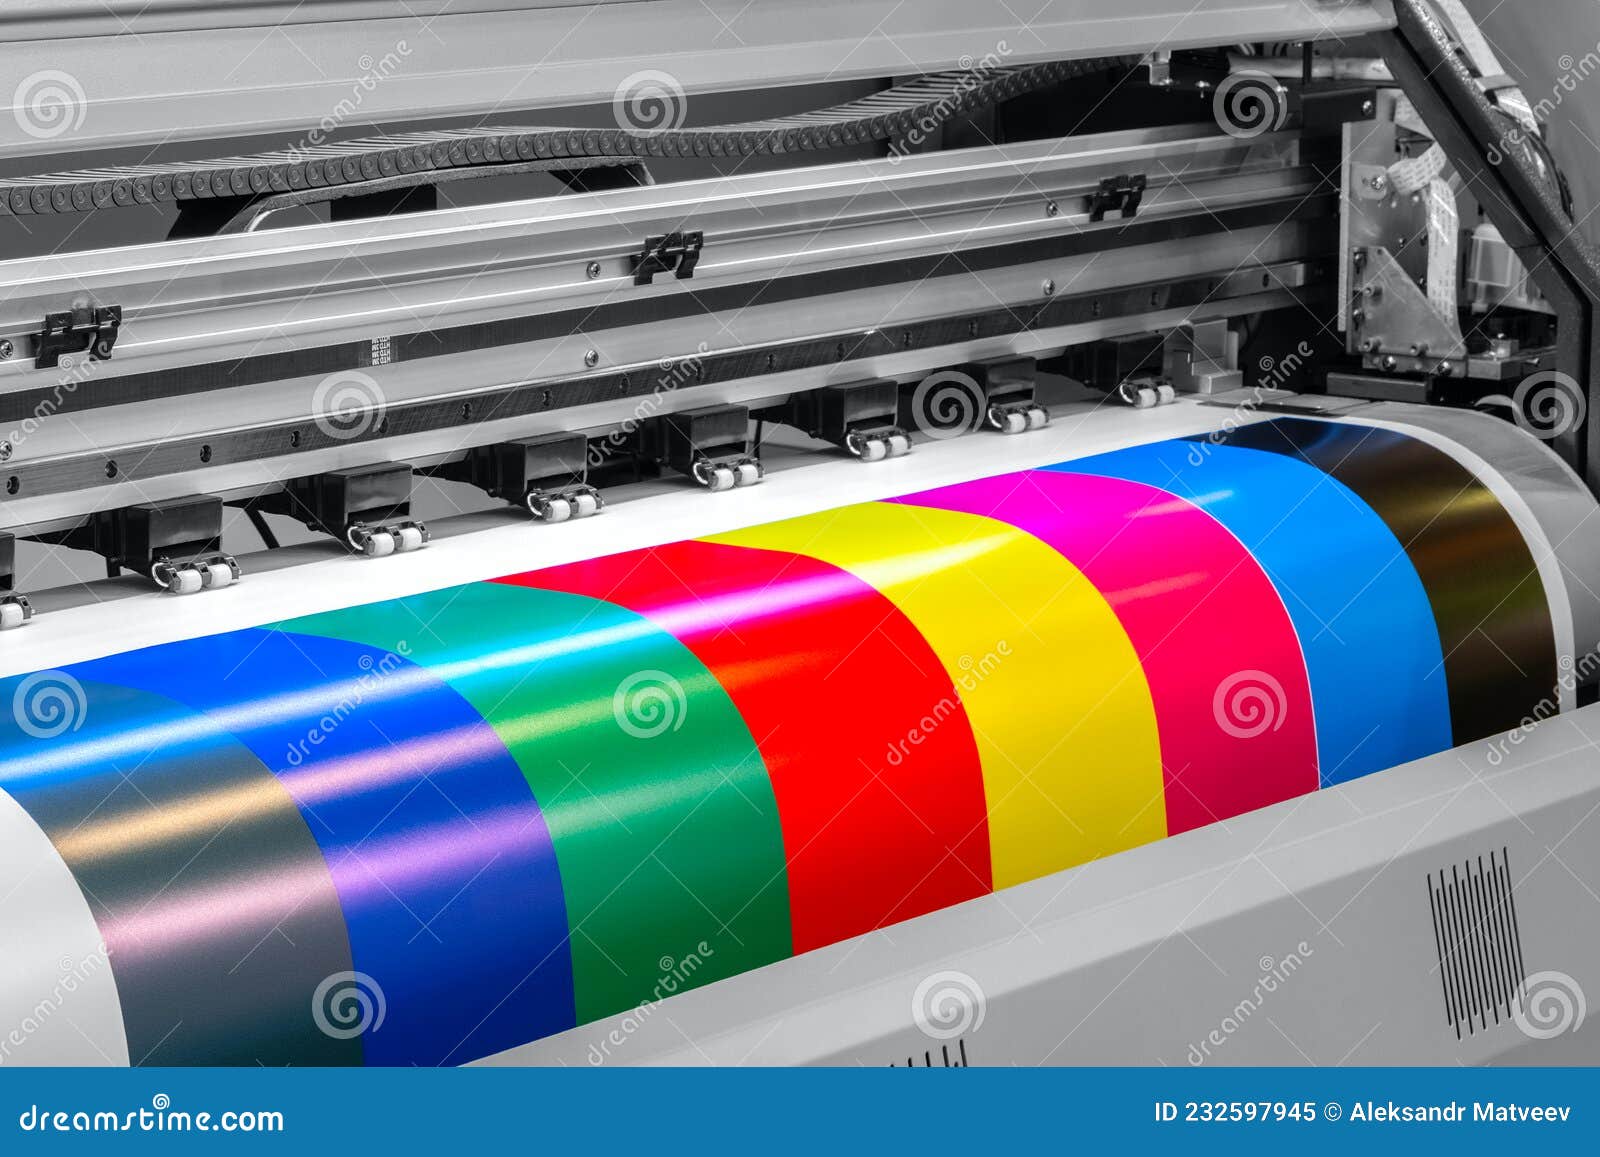 wide-format inkjet printer, prints color stripes for proofing